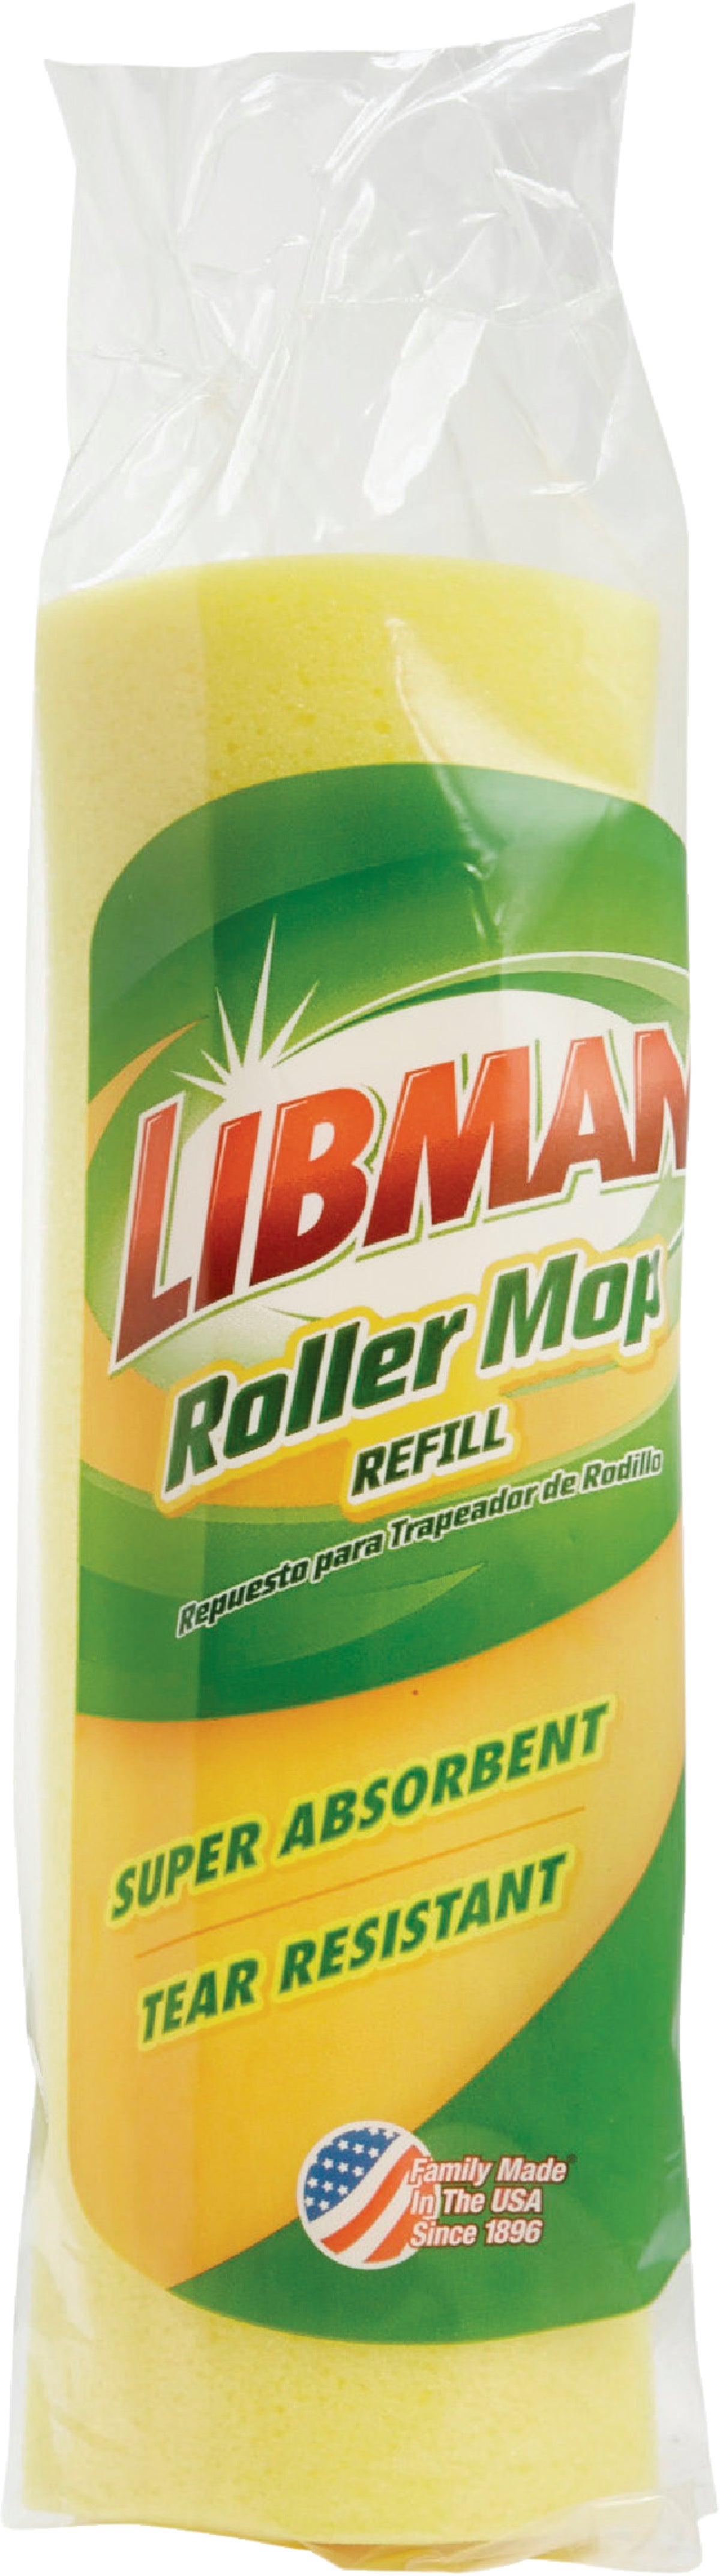 Libman Wd Flr Roller Mop Refill 